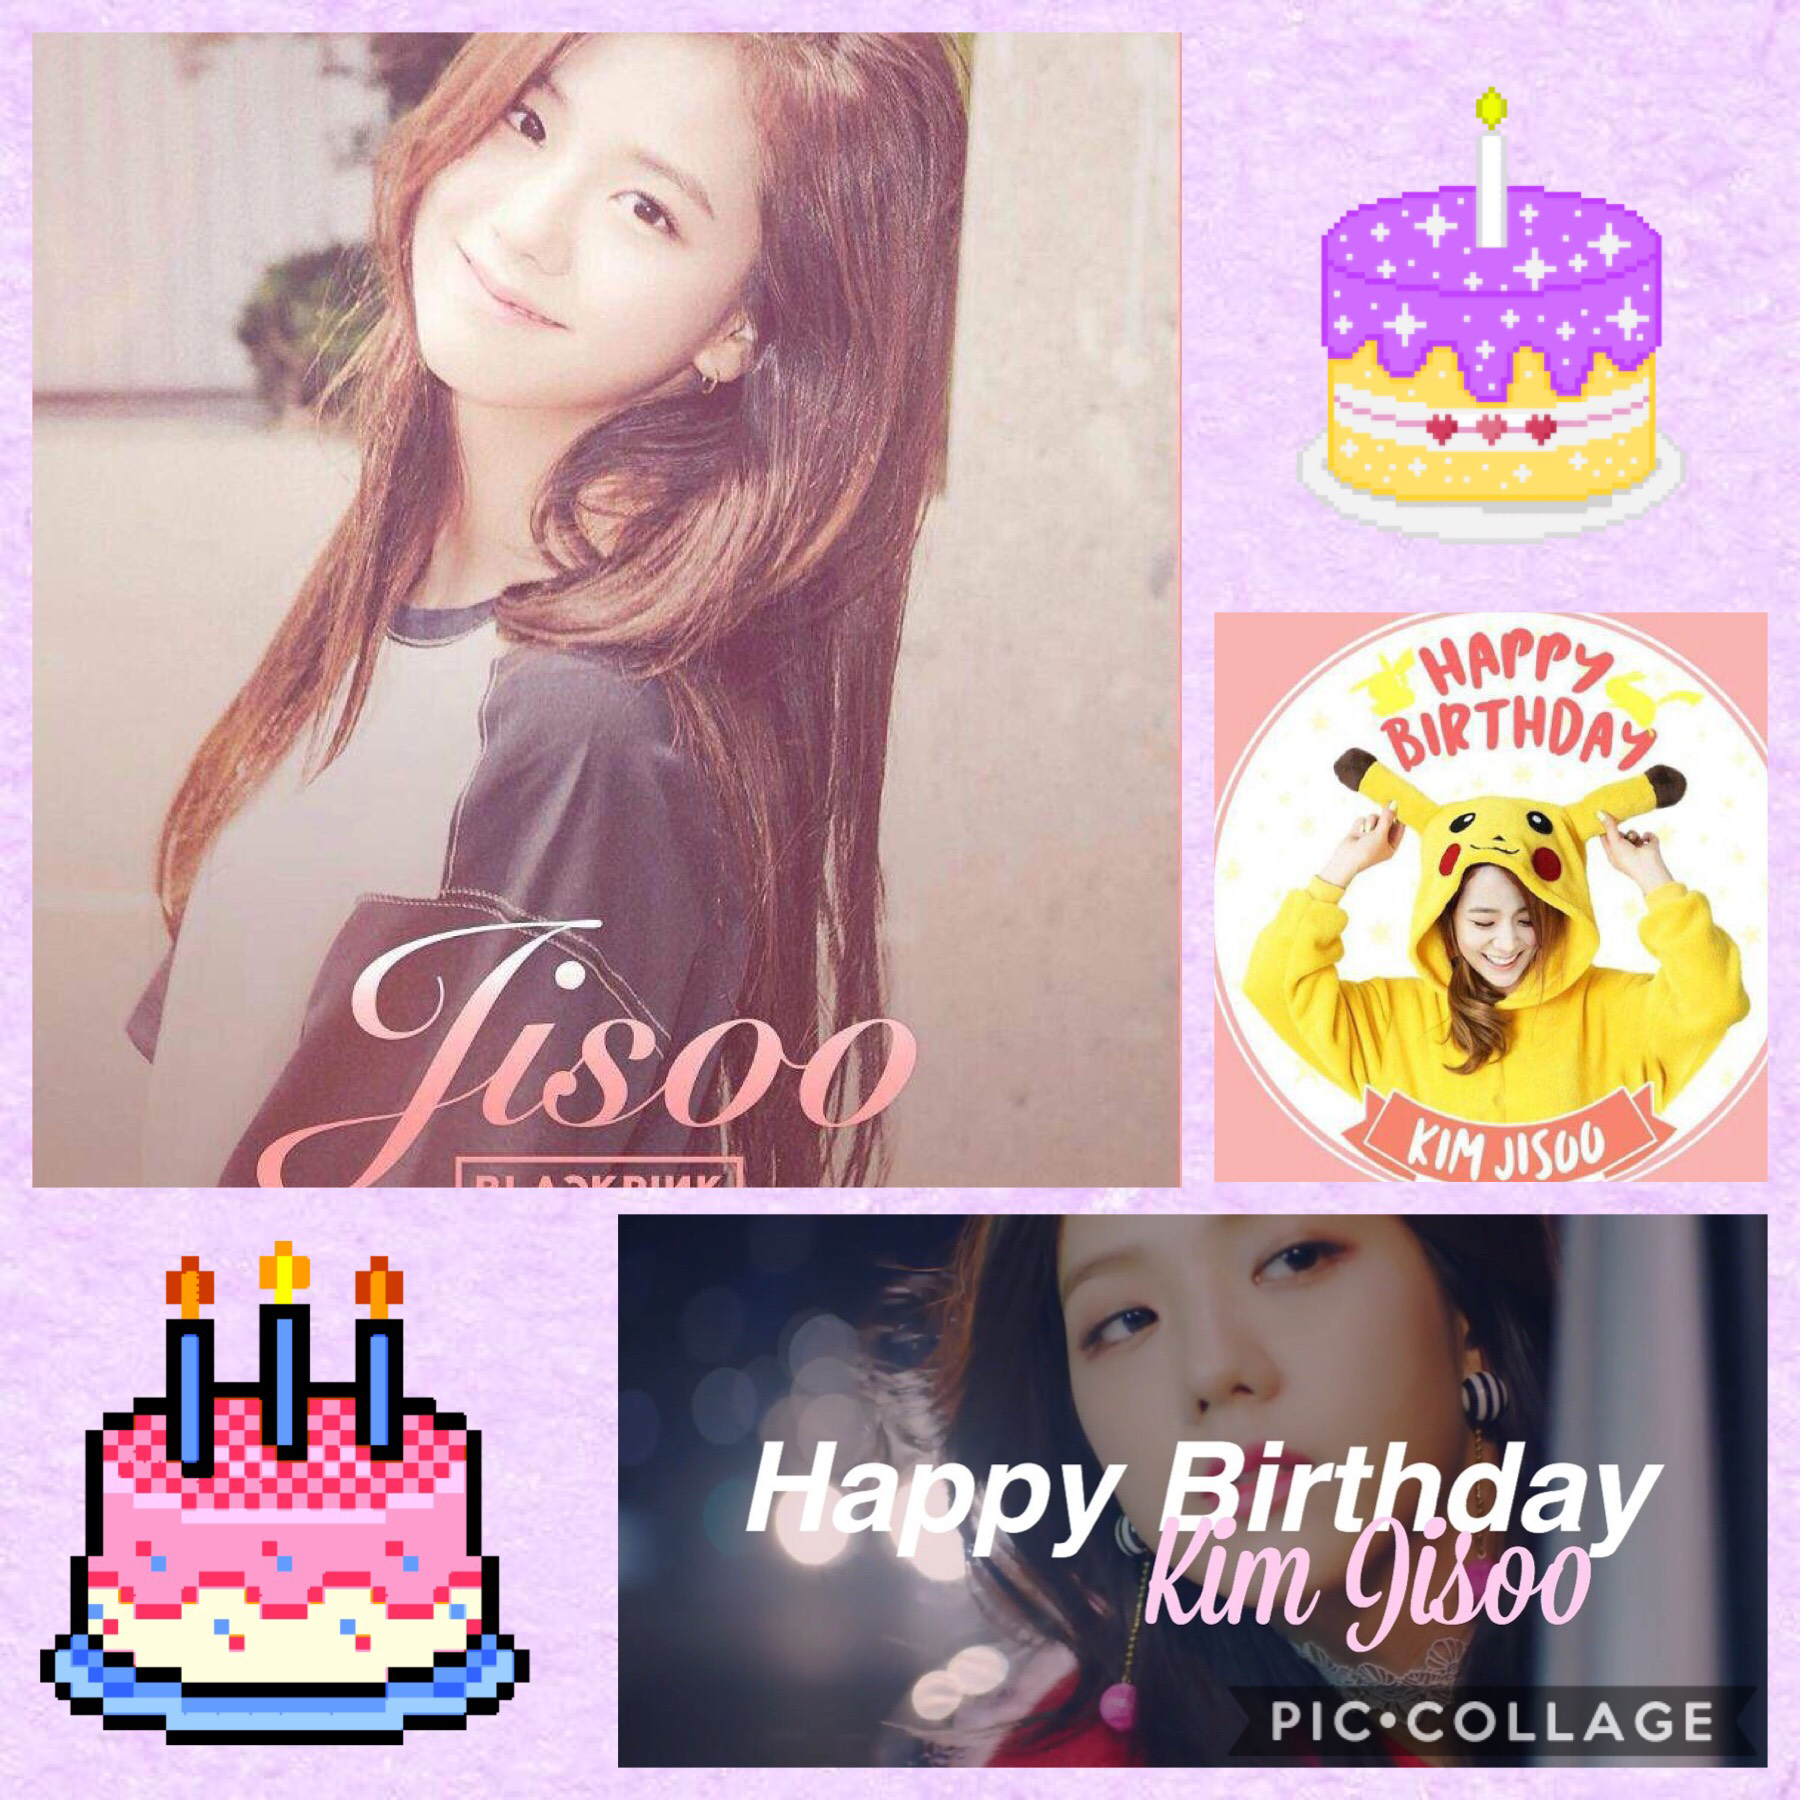 Like if you wish KIM JISOO happy birthday. Love ya Jisoo 